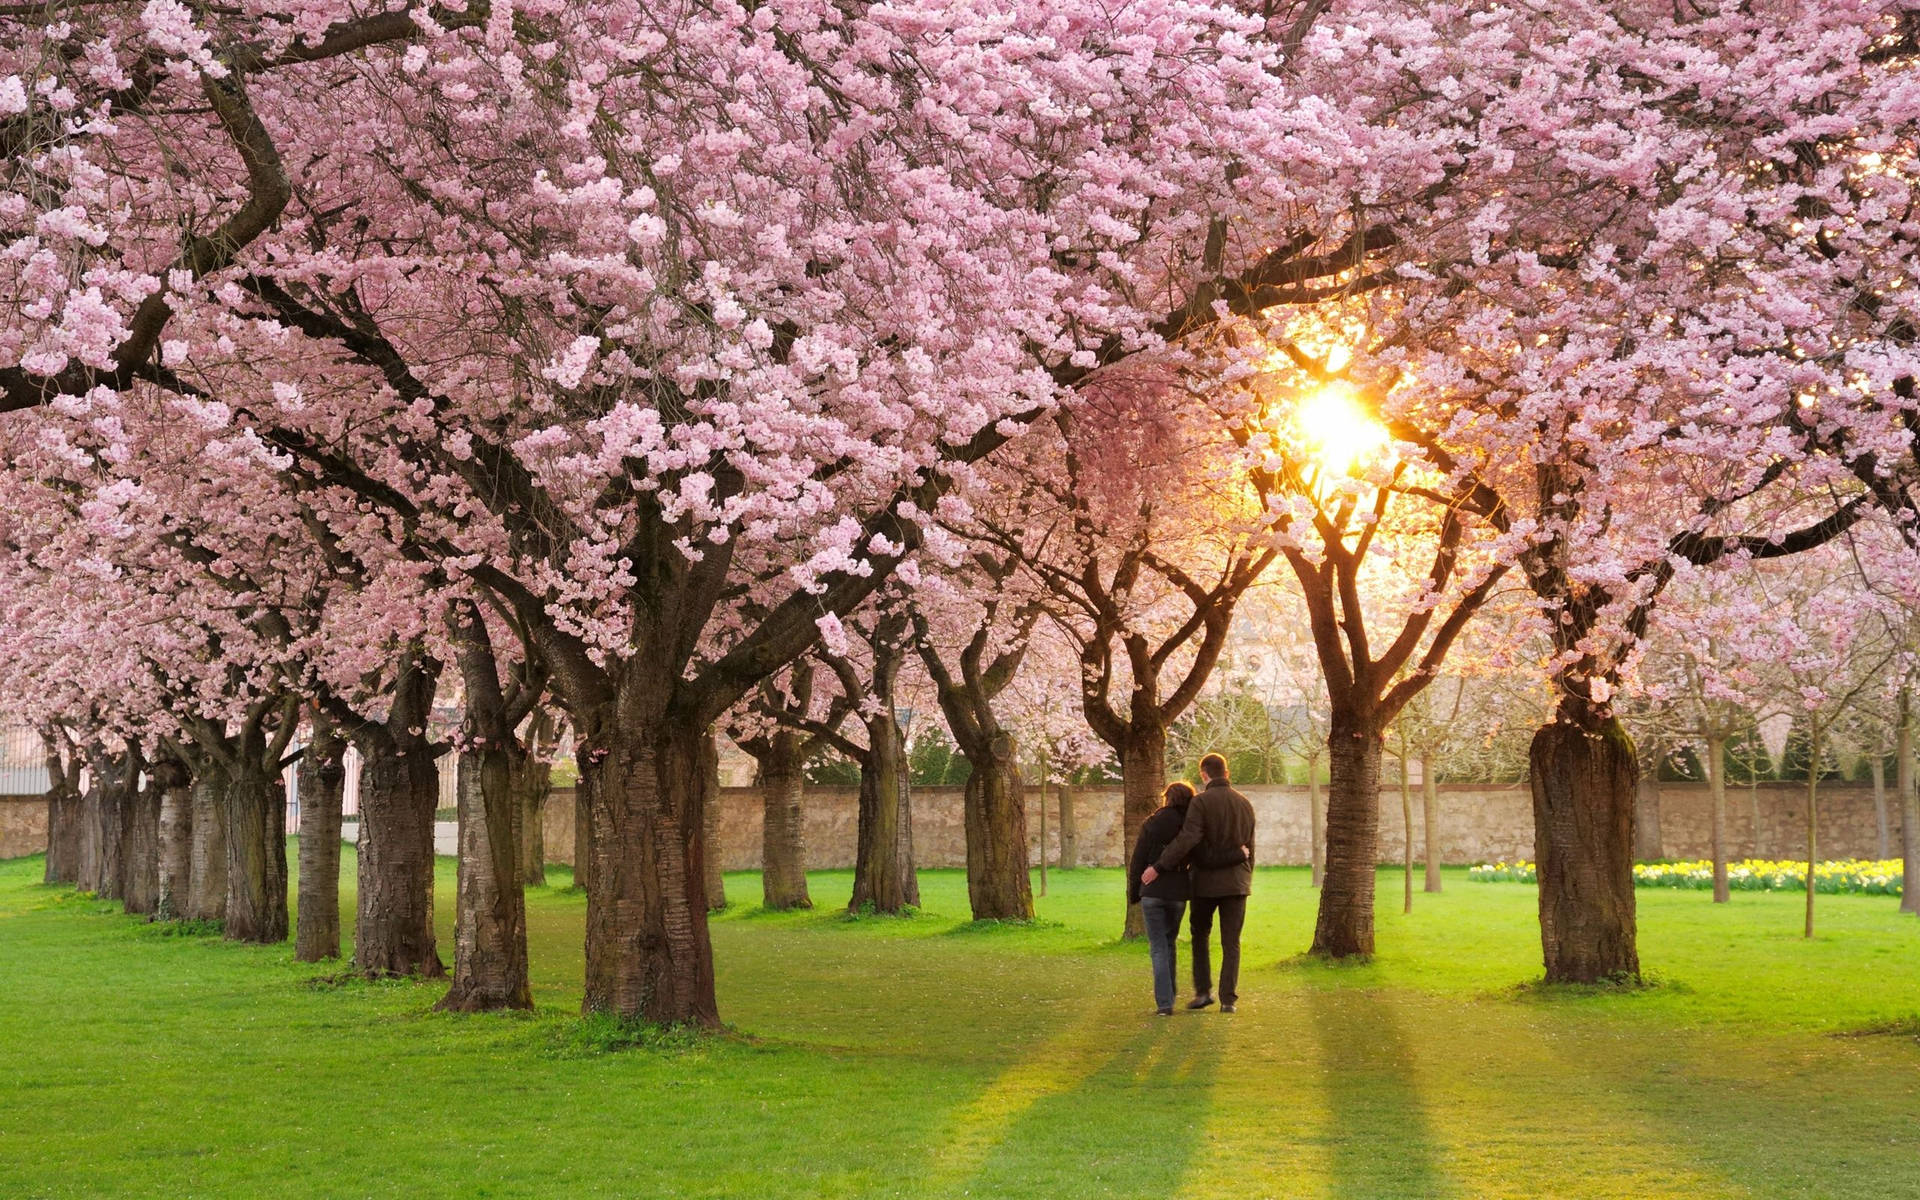 Ettpar Som Promenerar Genom En Park Med Körsbärsträd. Wallpaper